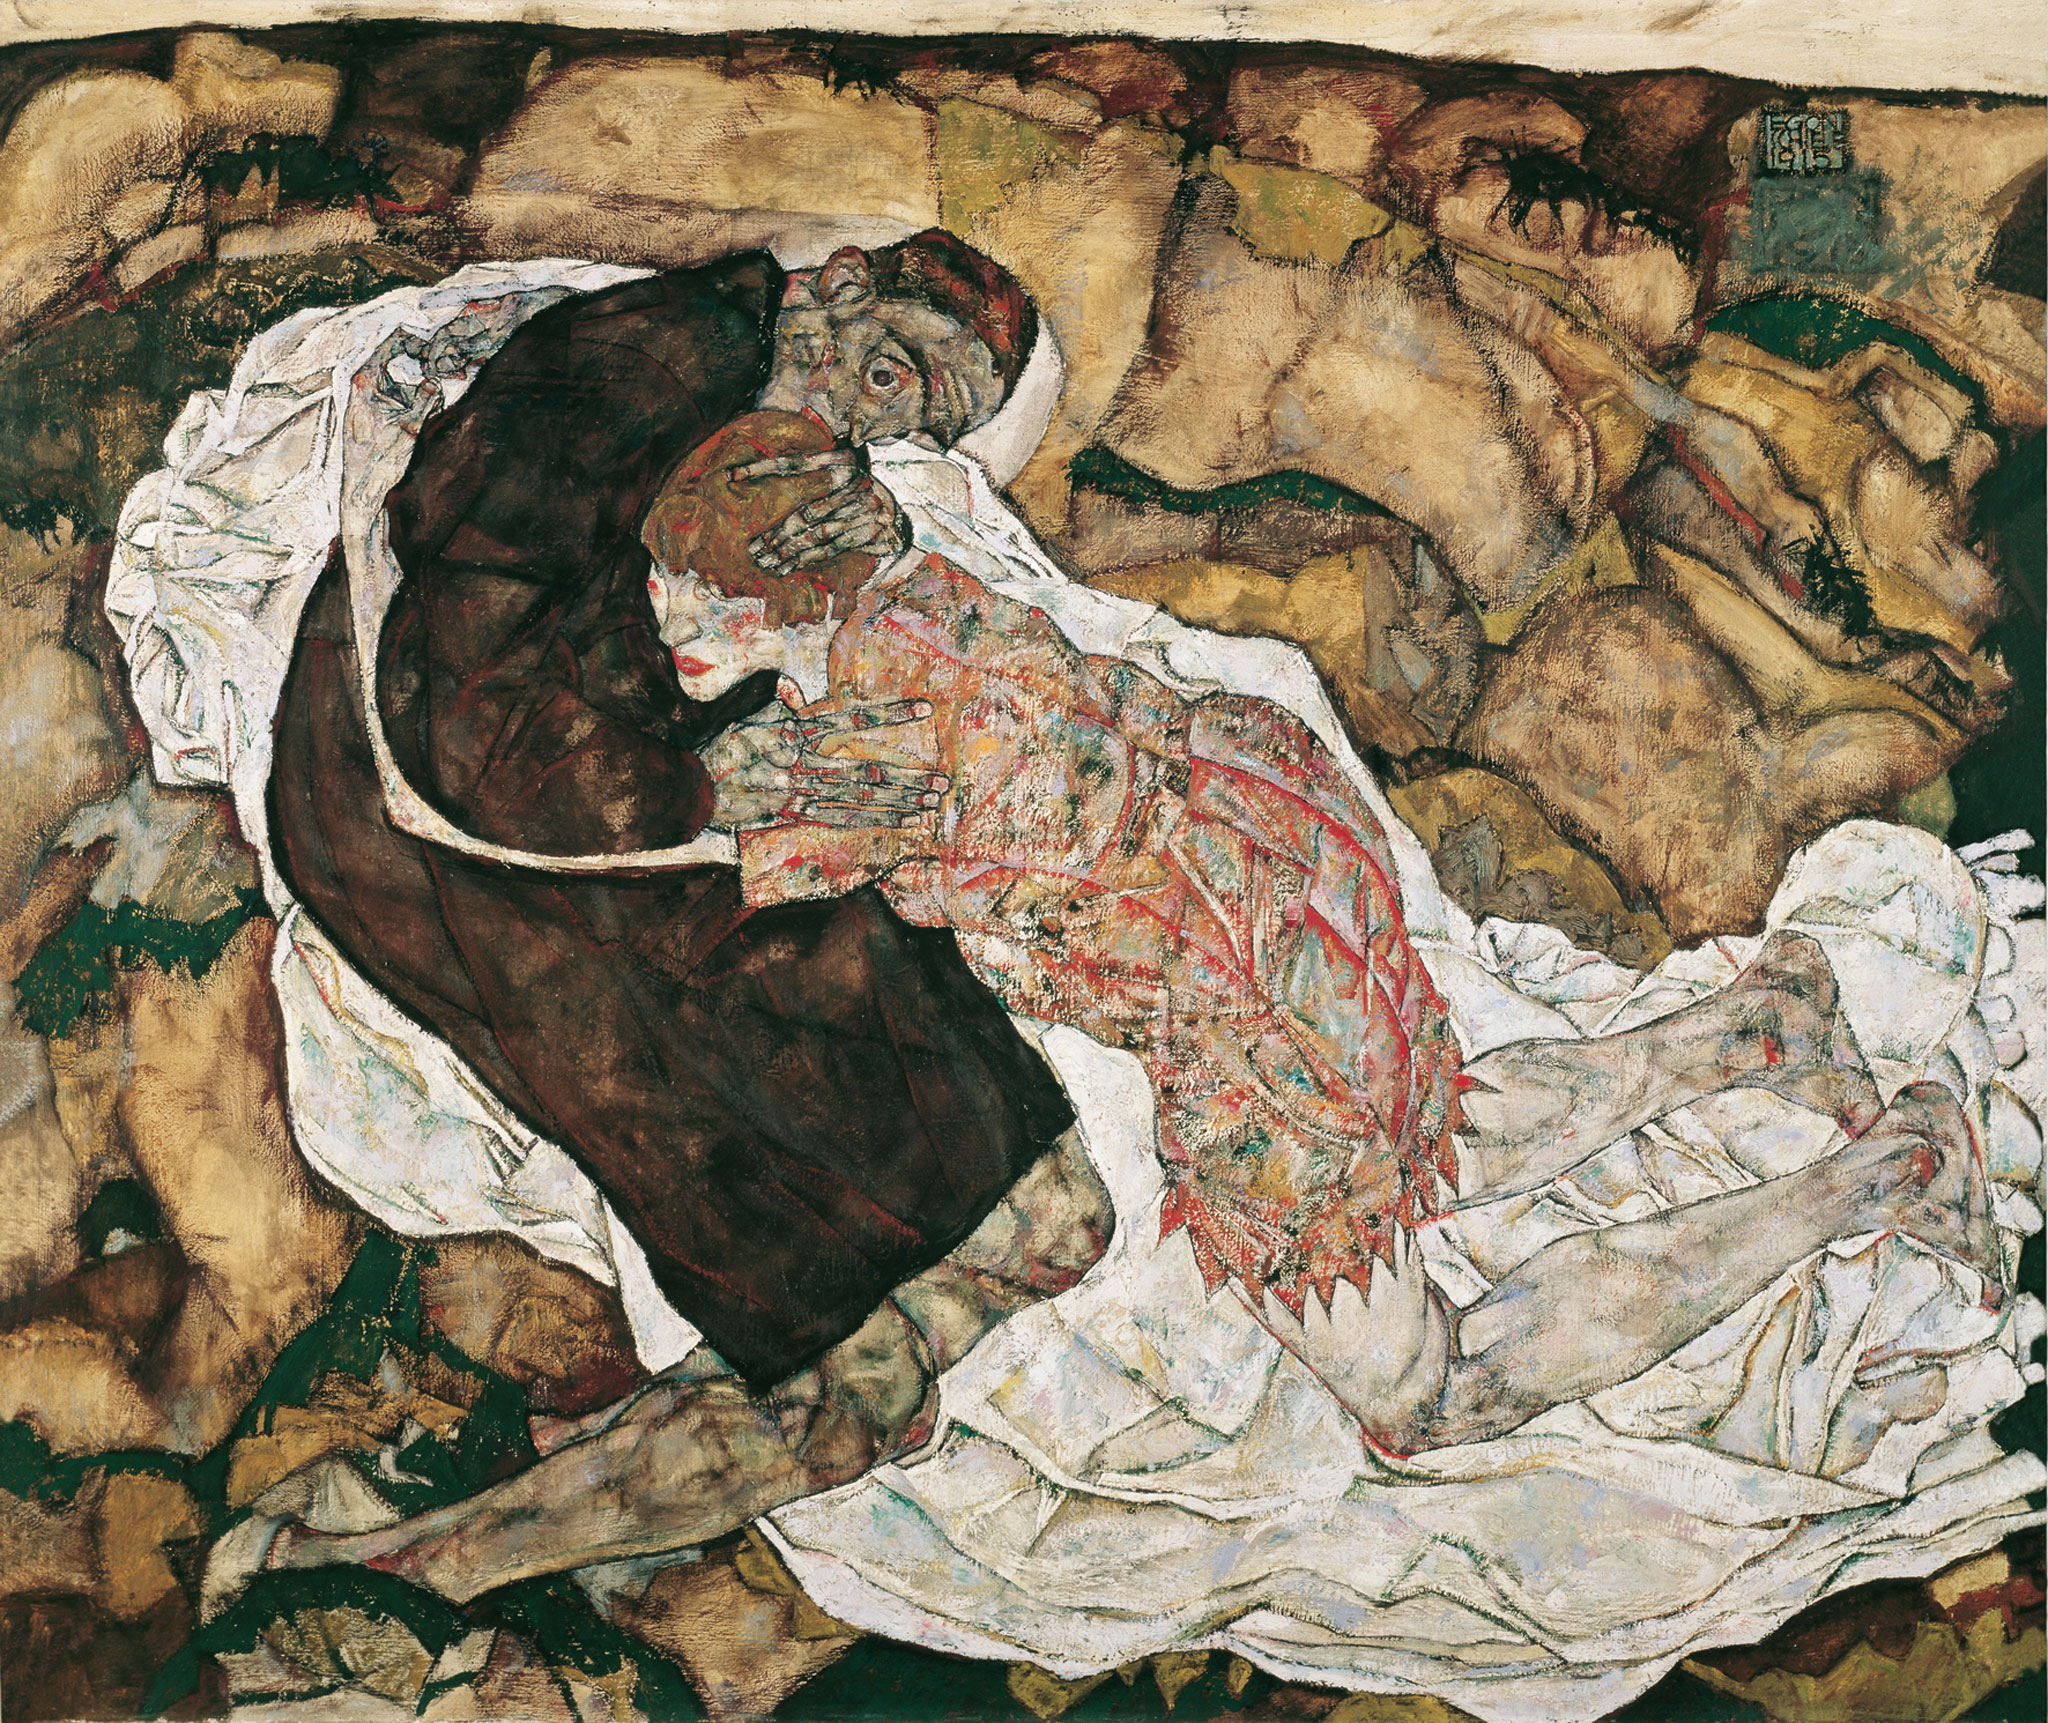 Ölüm ve Kız by Egon Schiele - 1915 - 89.5 x 125.5 cm 